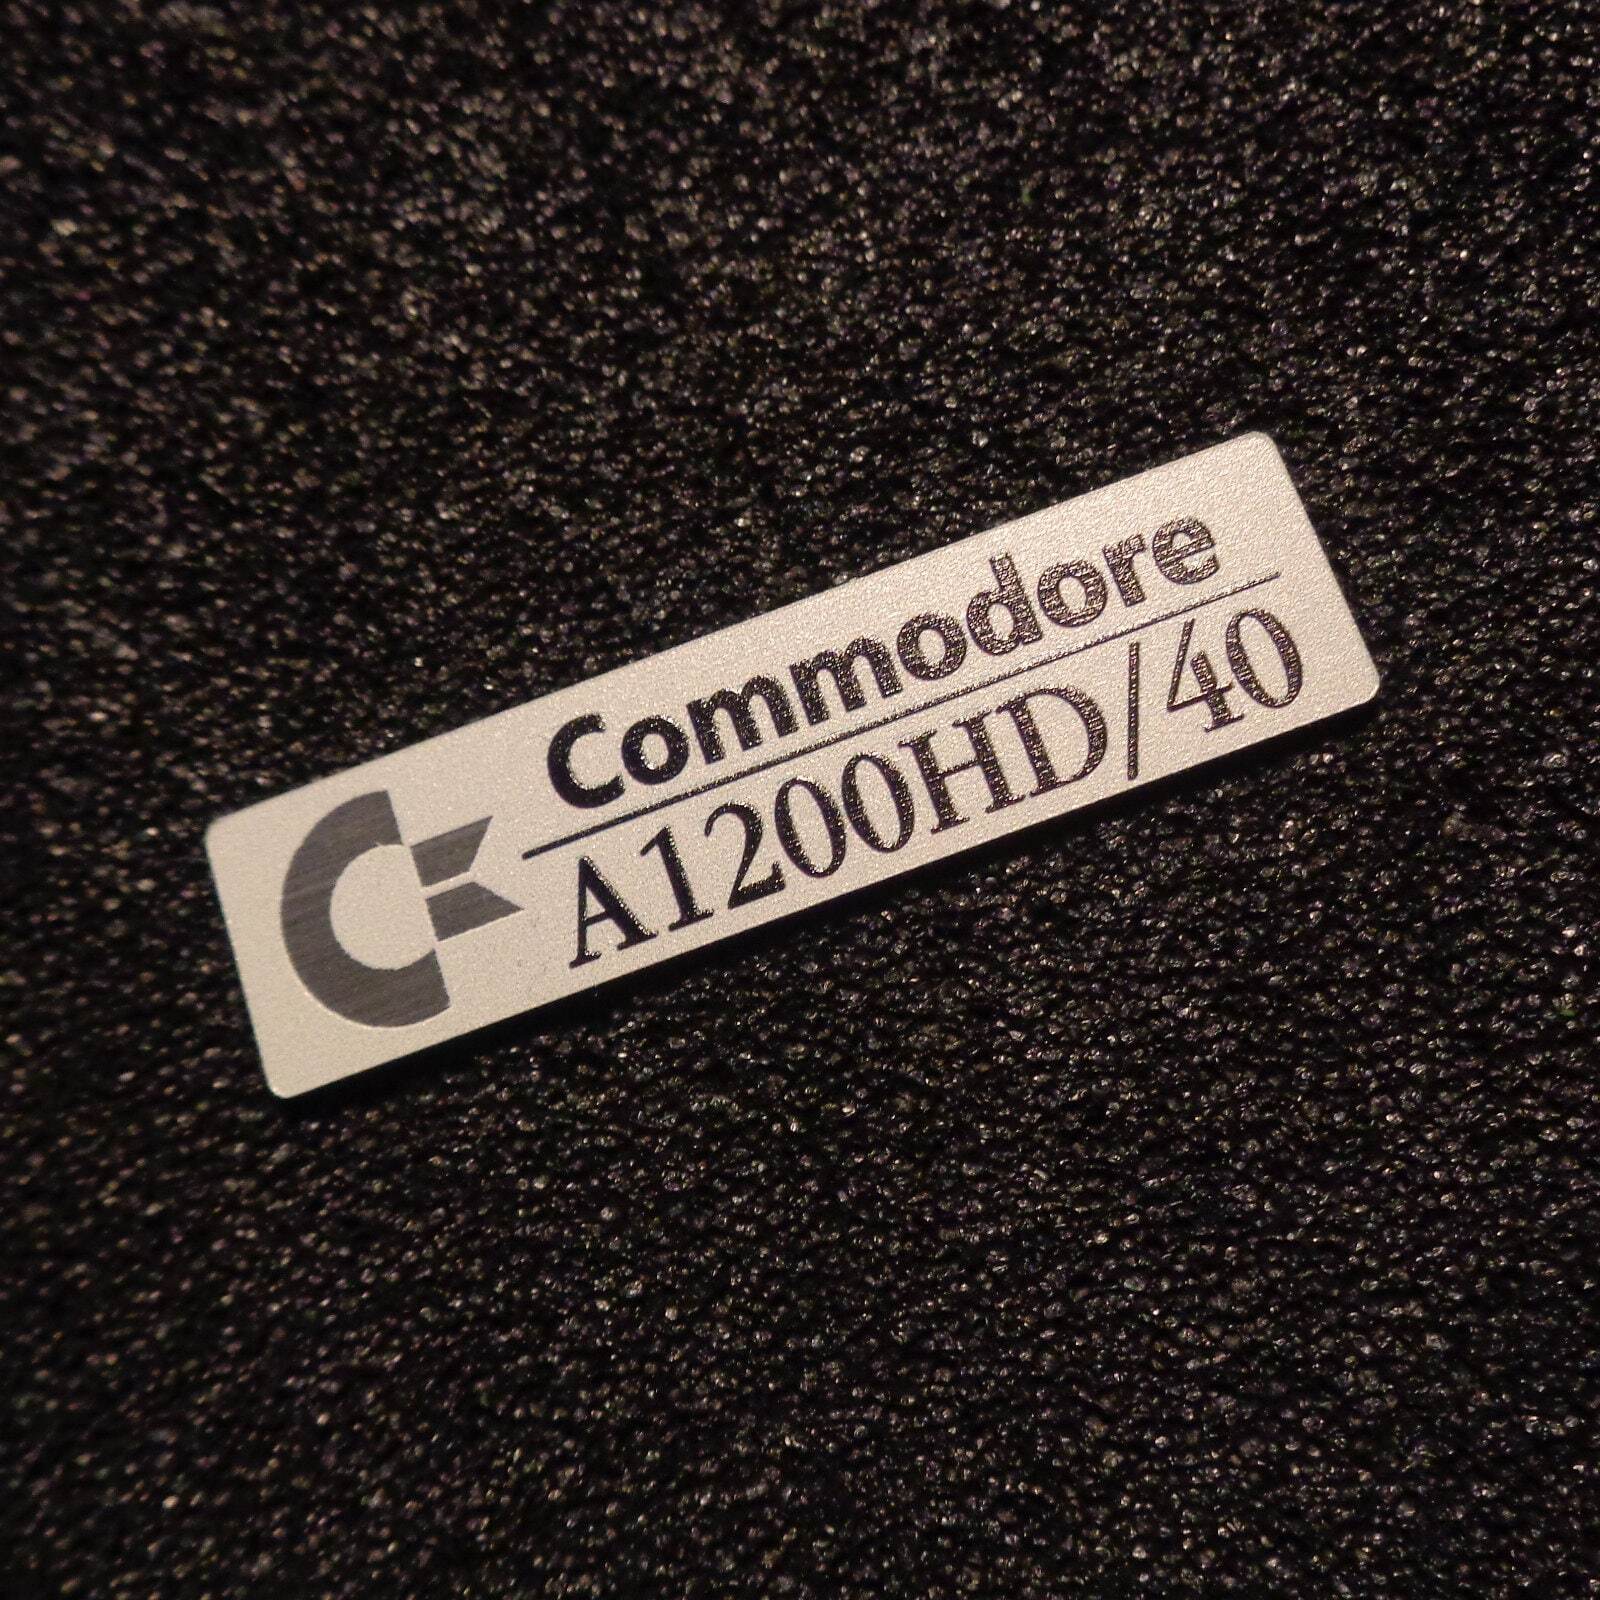 Commodore Amiga 1200HD/40 Label / Logo / Sticker / Badge brushed aluminum [502c]